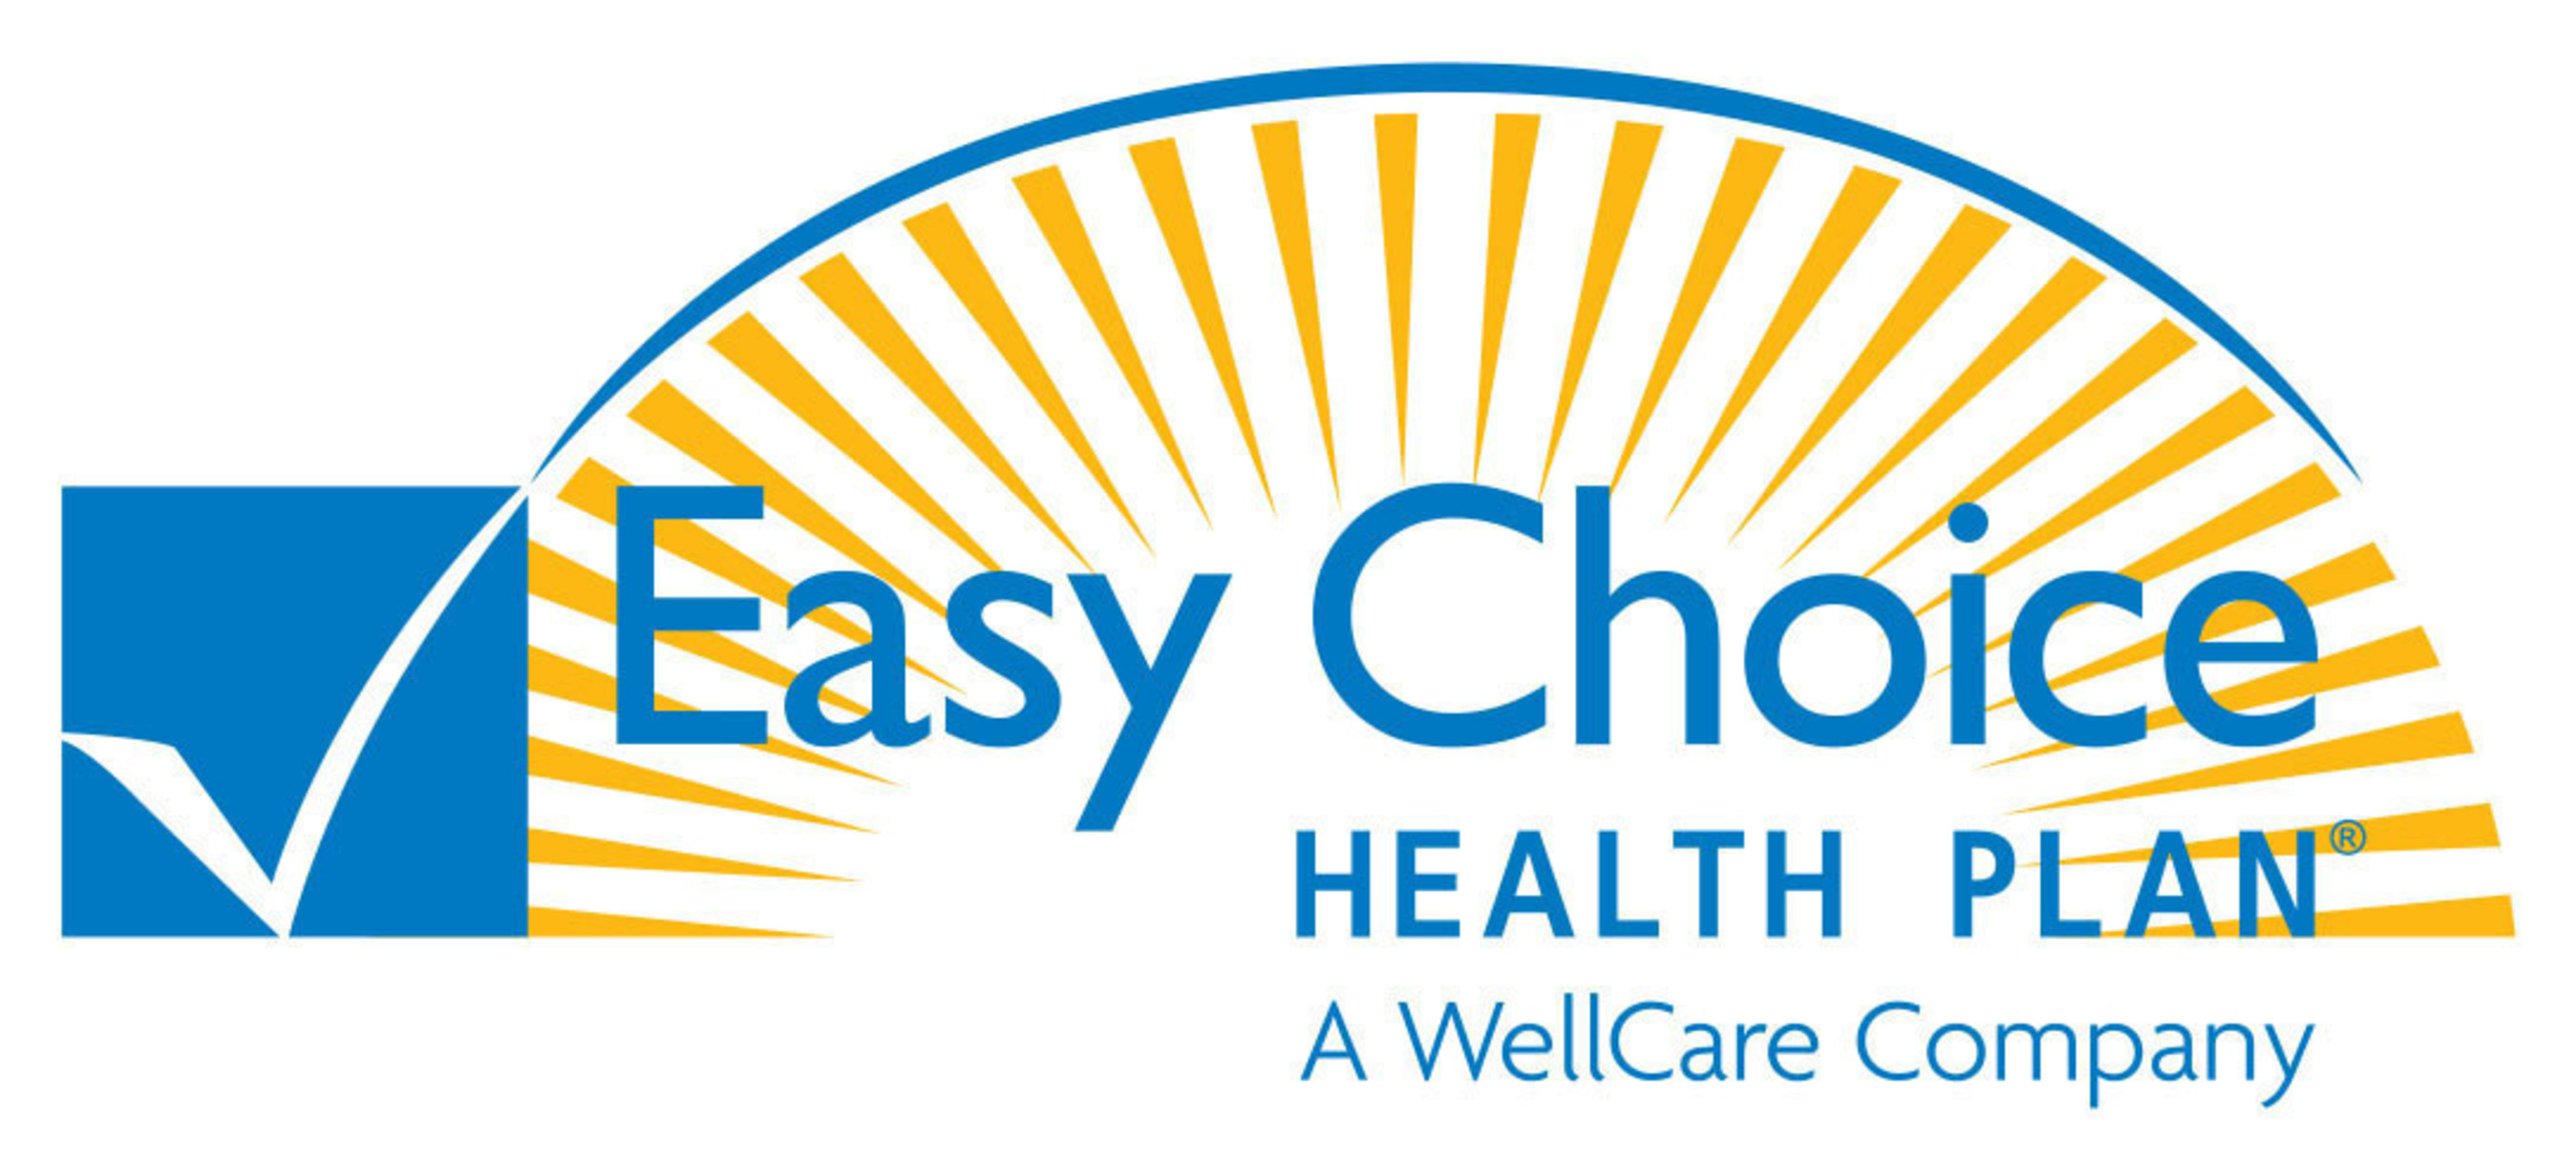 Логотип бренда WELLCARE. Expert choice логотип. Healthy choice бренд. Physician's choice logo. Easy choice